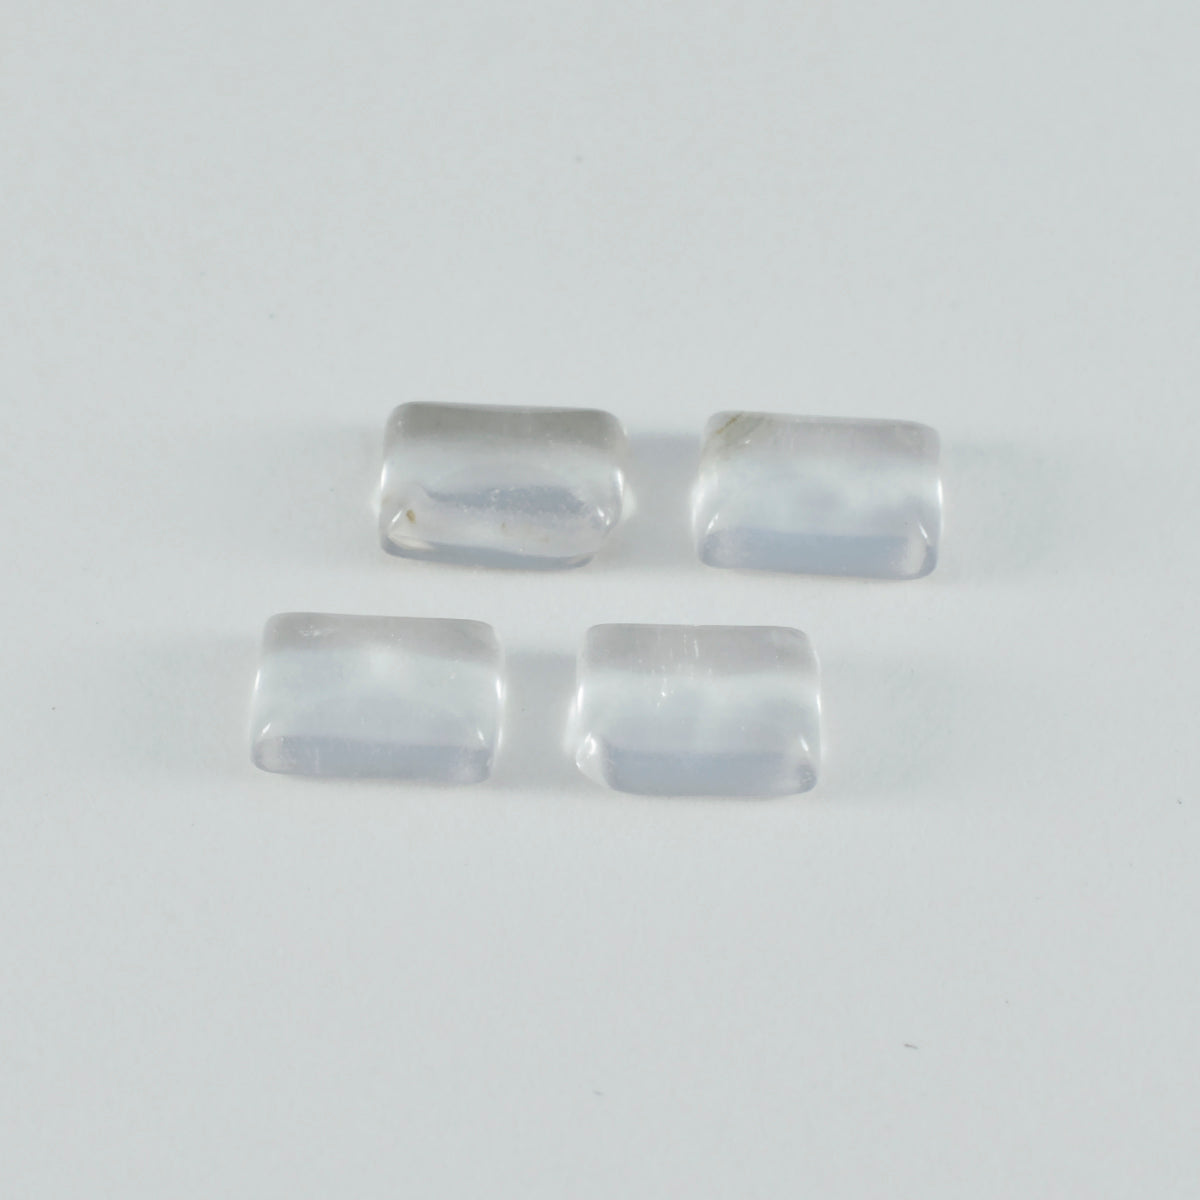 Riyogems 1 Stück weißer Kristallquarz-Cabochon, 9 x 11 mm, achteckige Form, tolle Qualität, lose Edelsteine